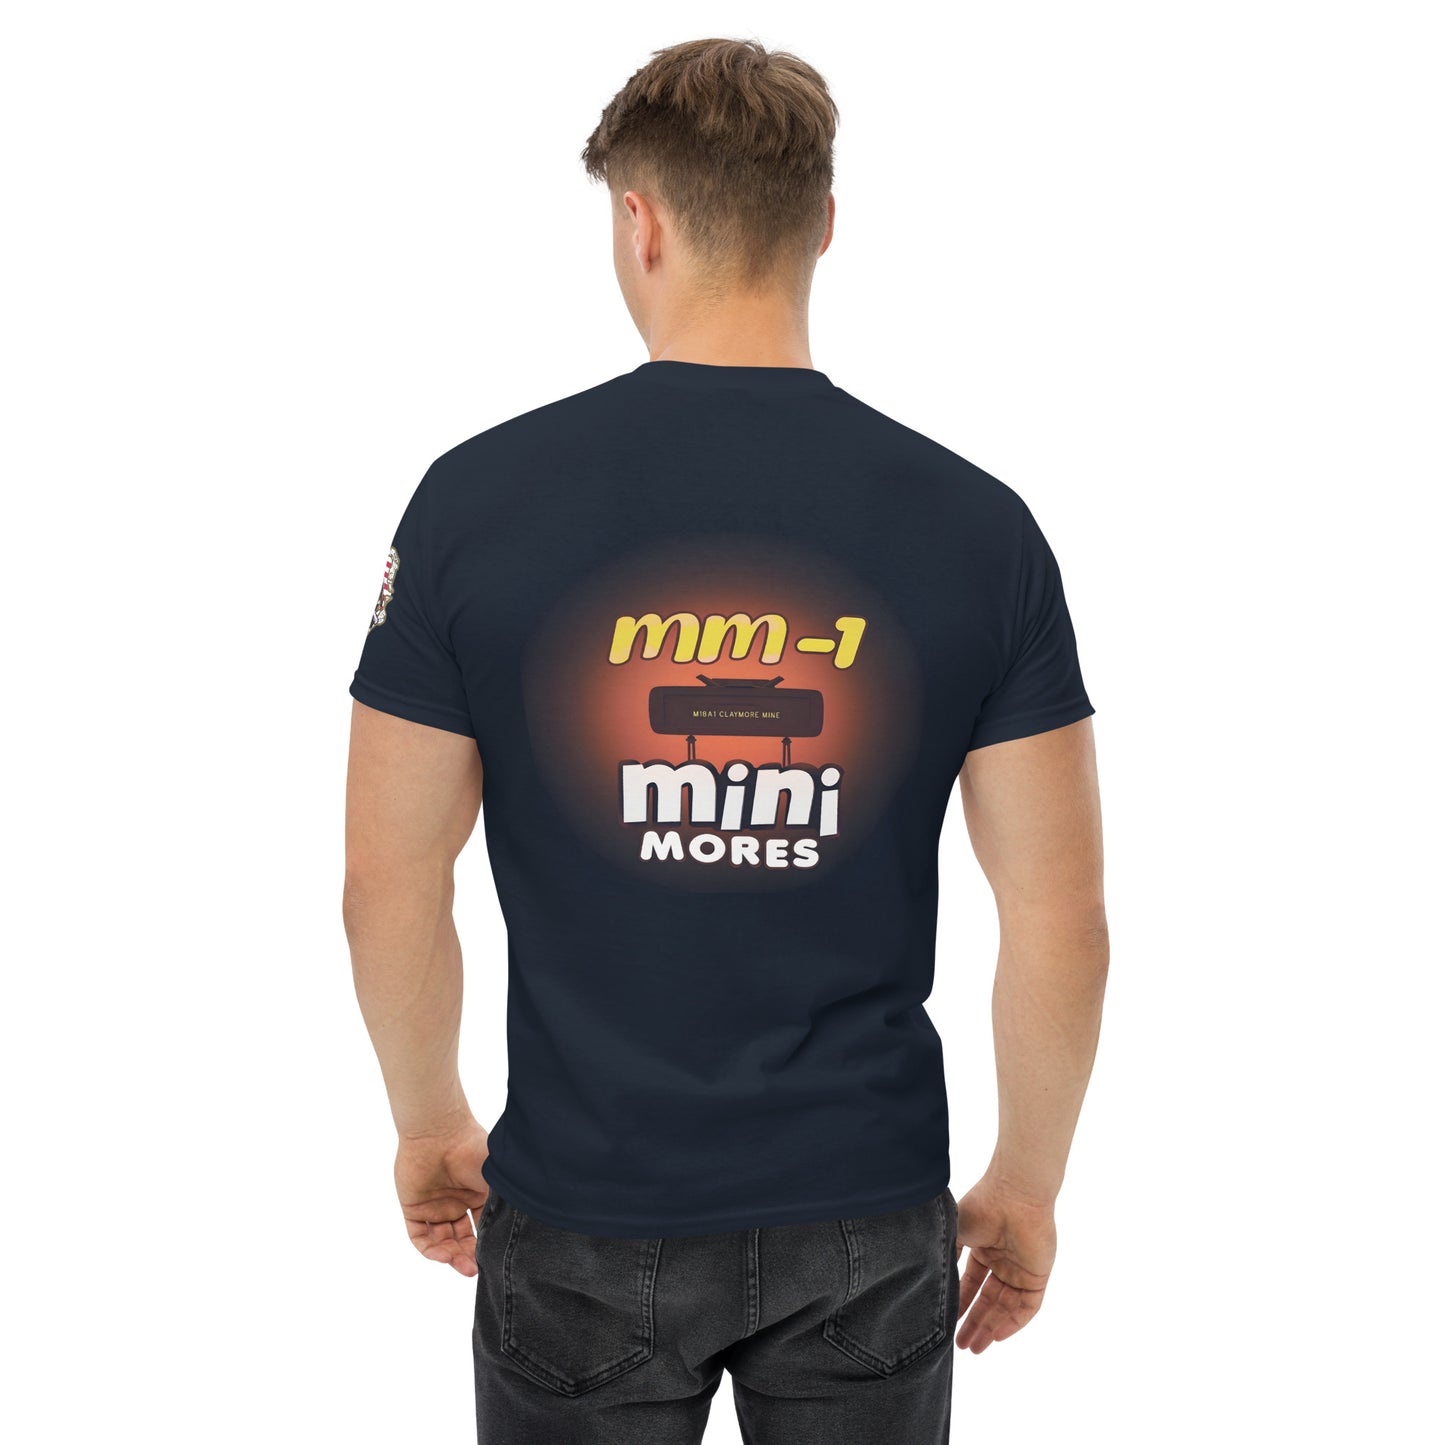 mm-1 mini-mores